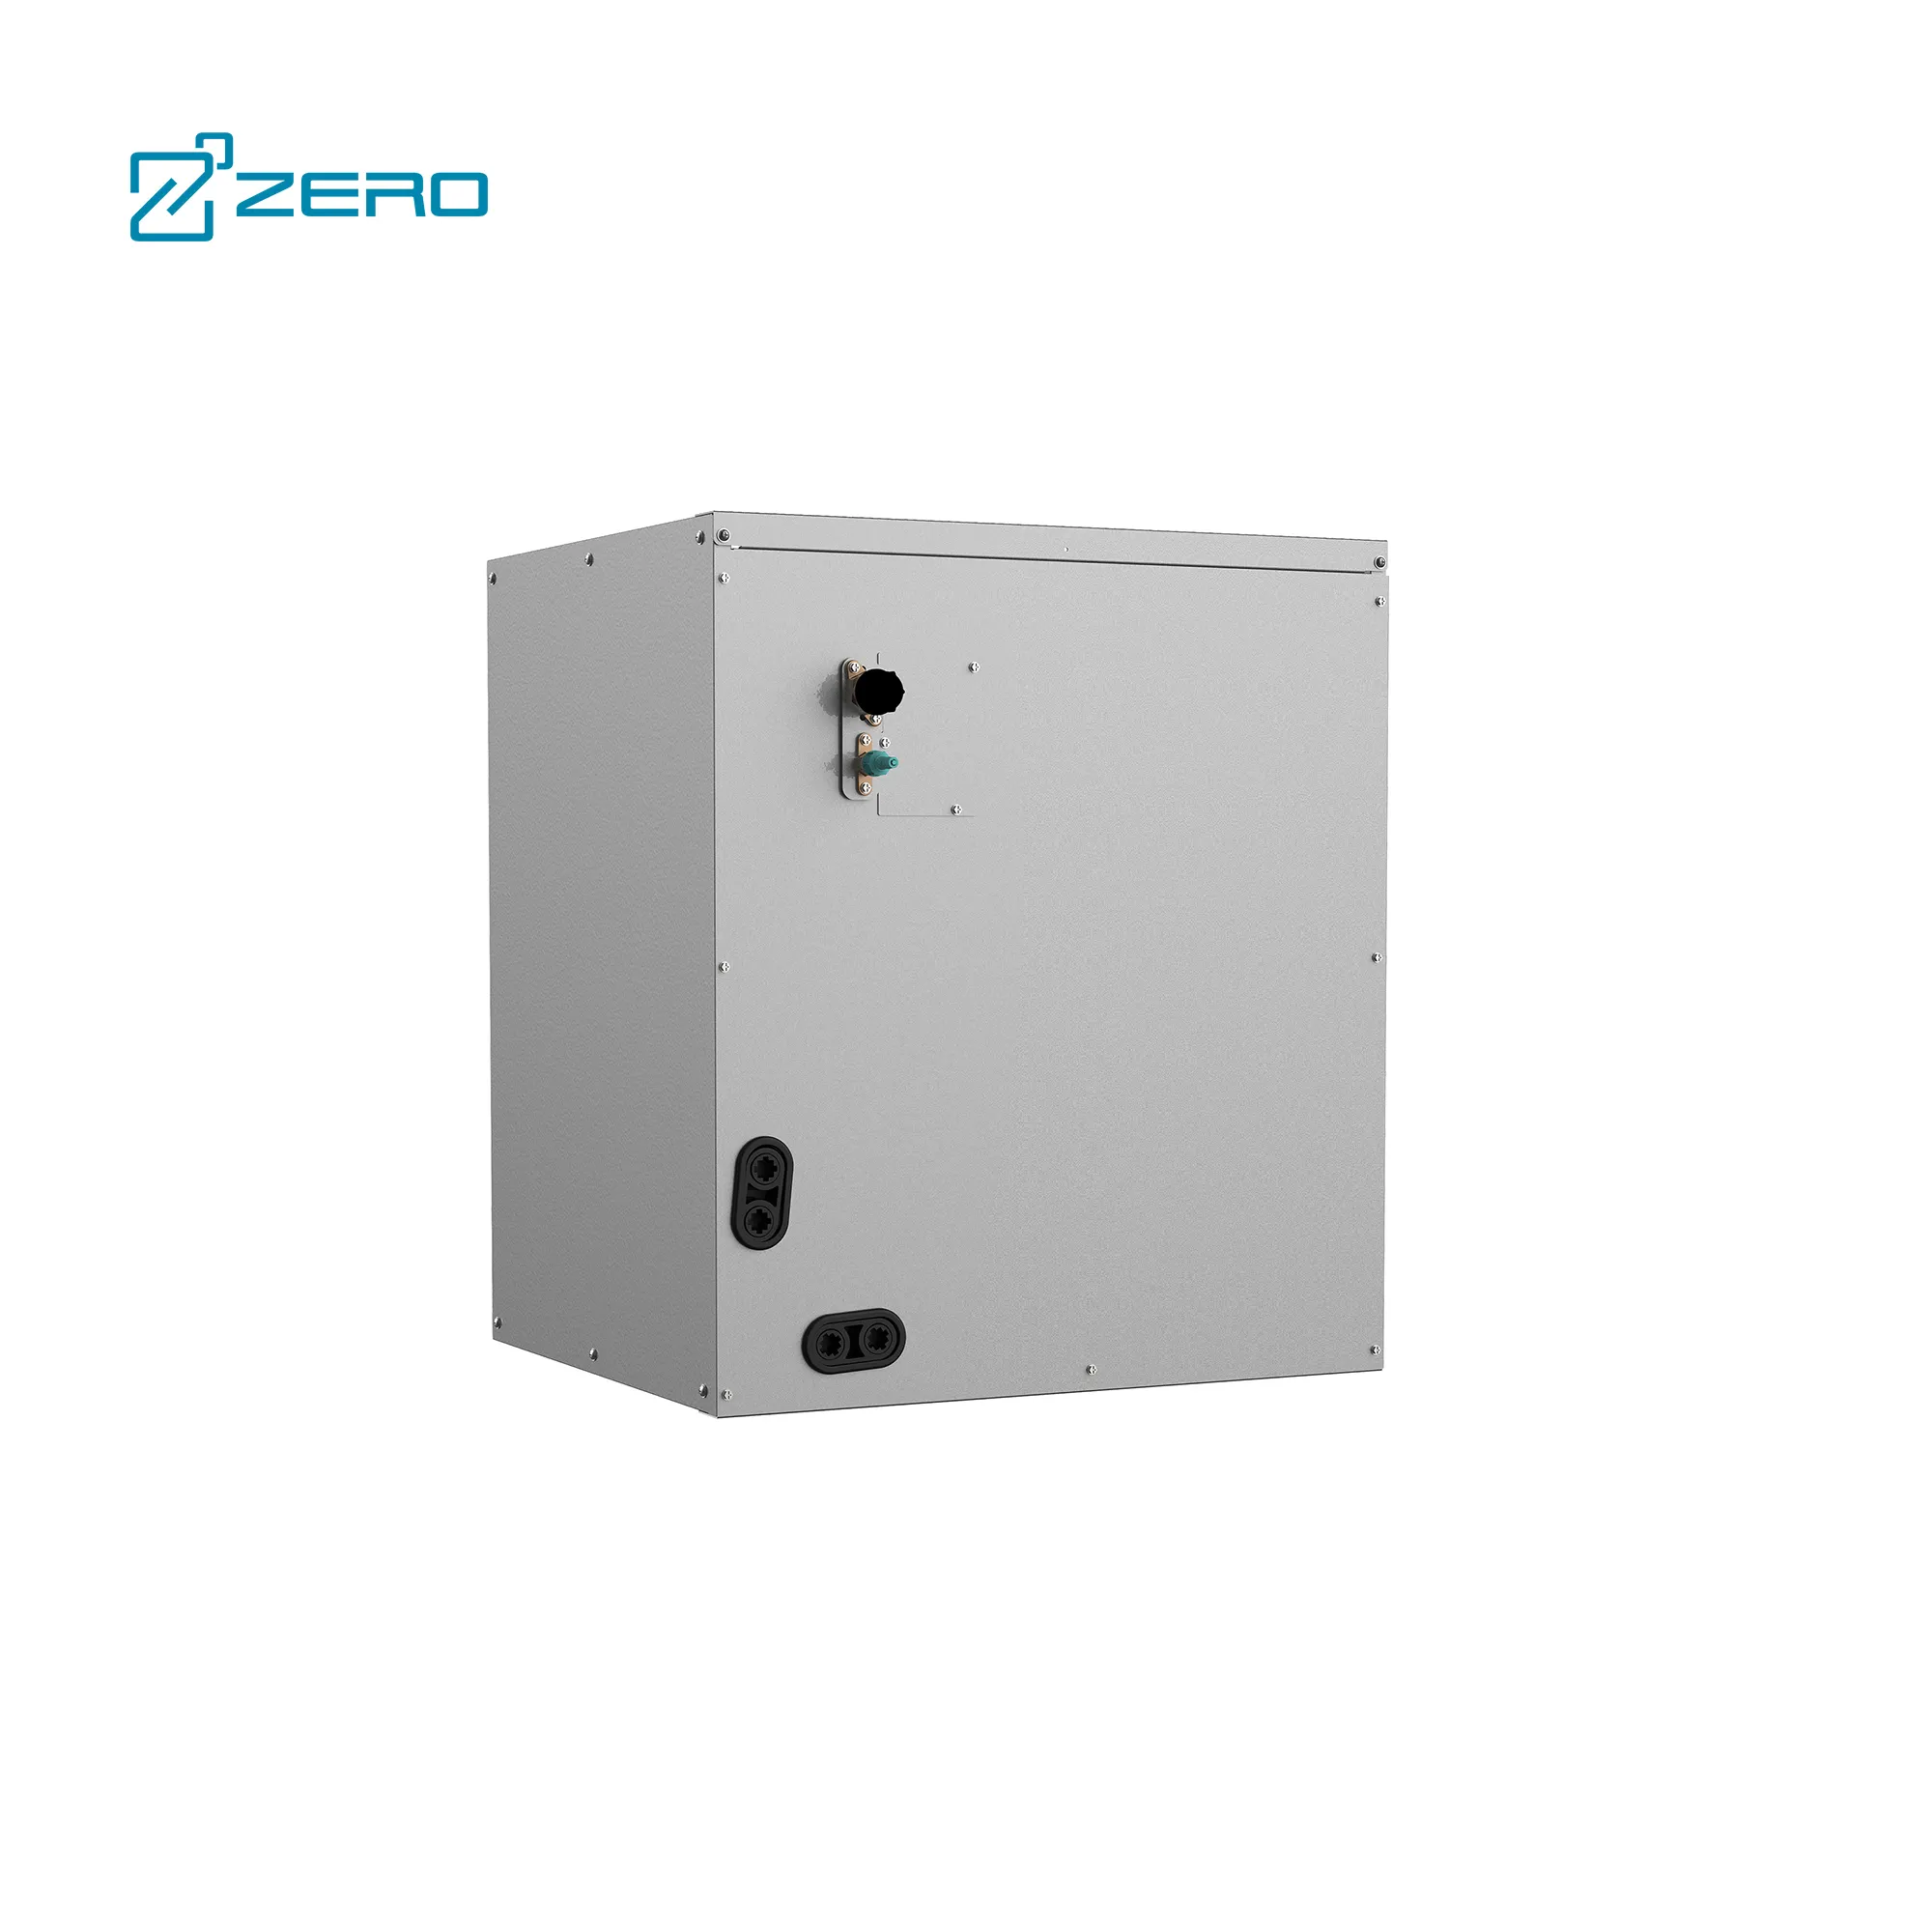 ZERO Z-ULTRA 17 seer2 split système de traitement de l'air 18000 30000 36000 Btu smart climatisation split unit climatiseur